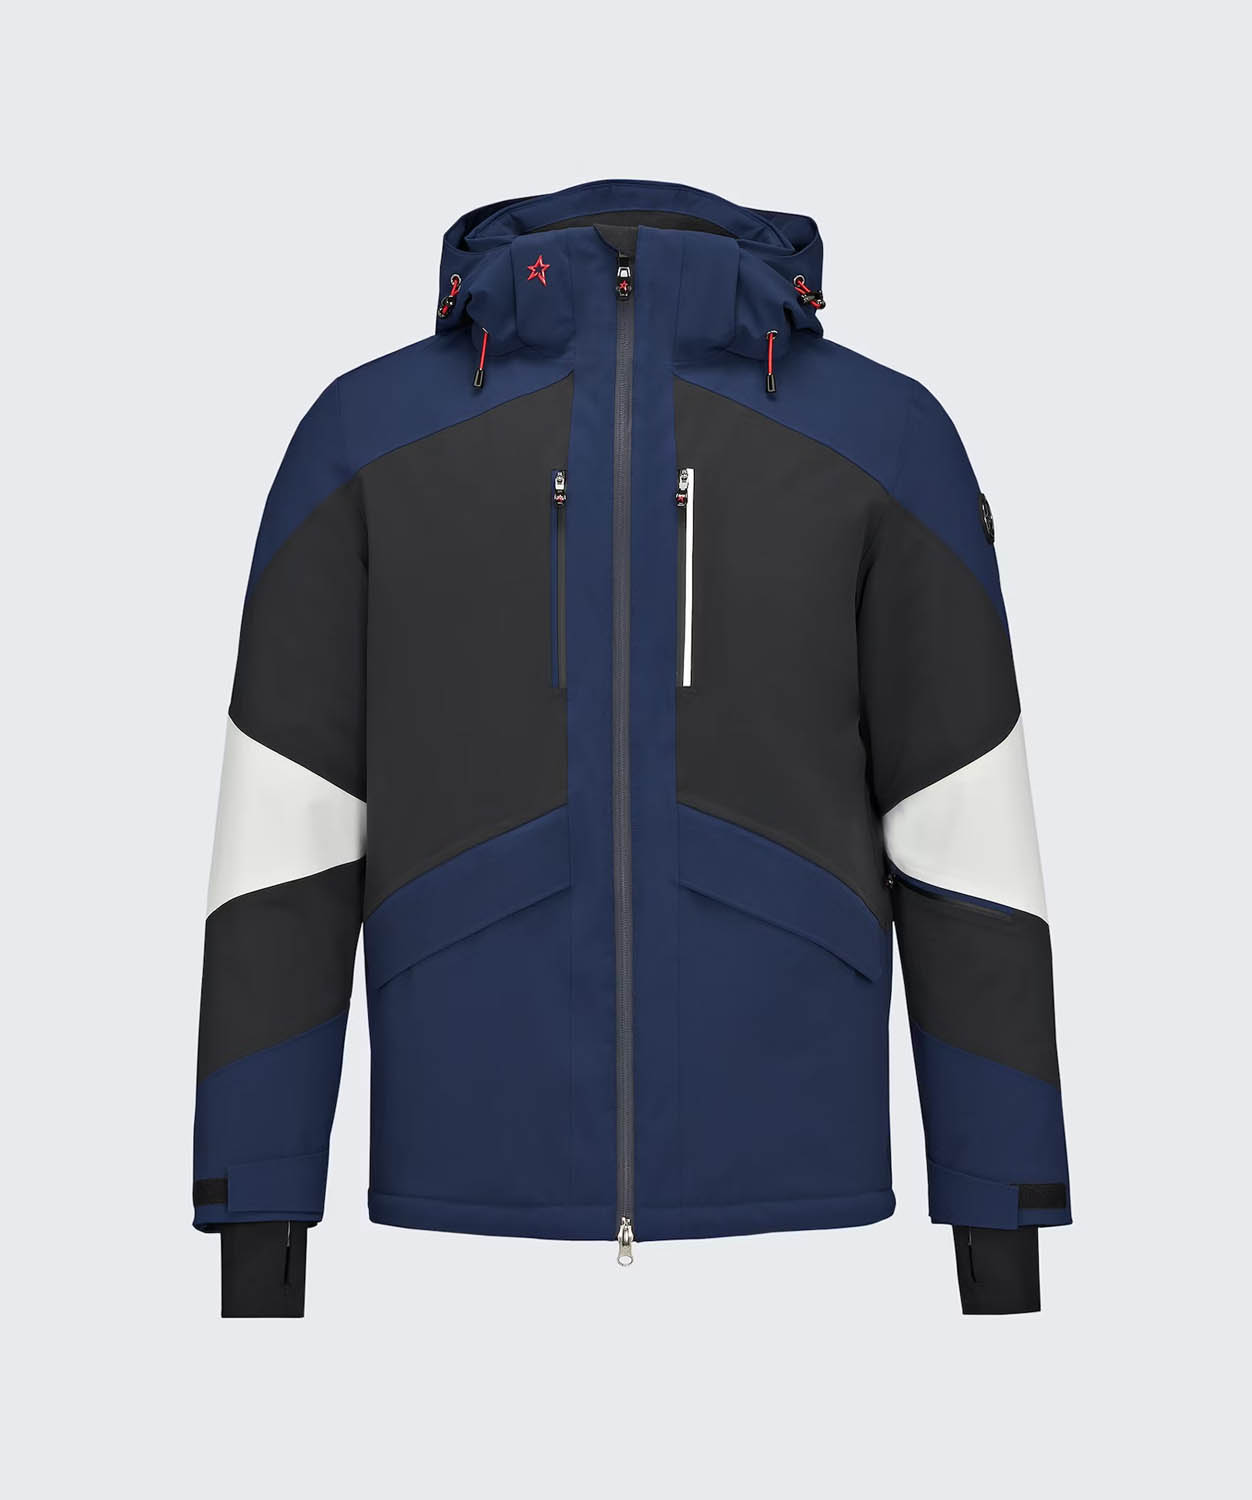 Men's Chamonix II Ski Jacket